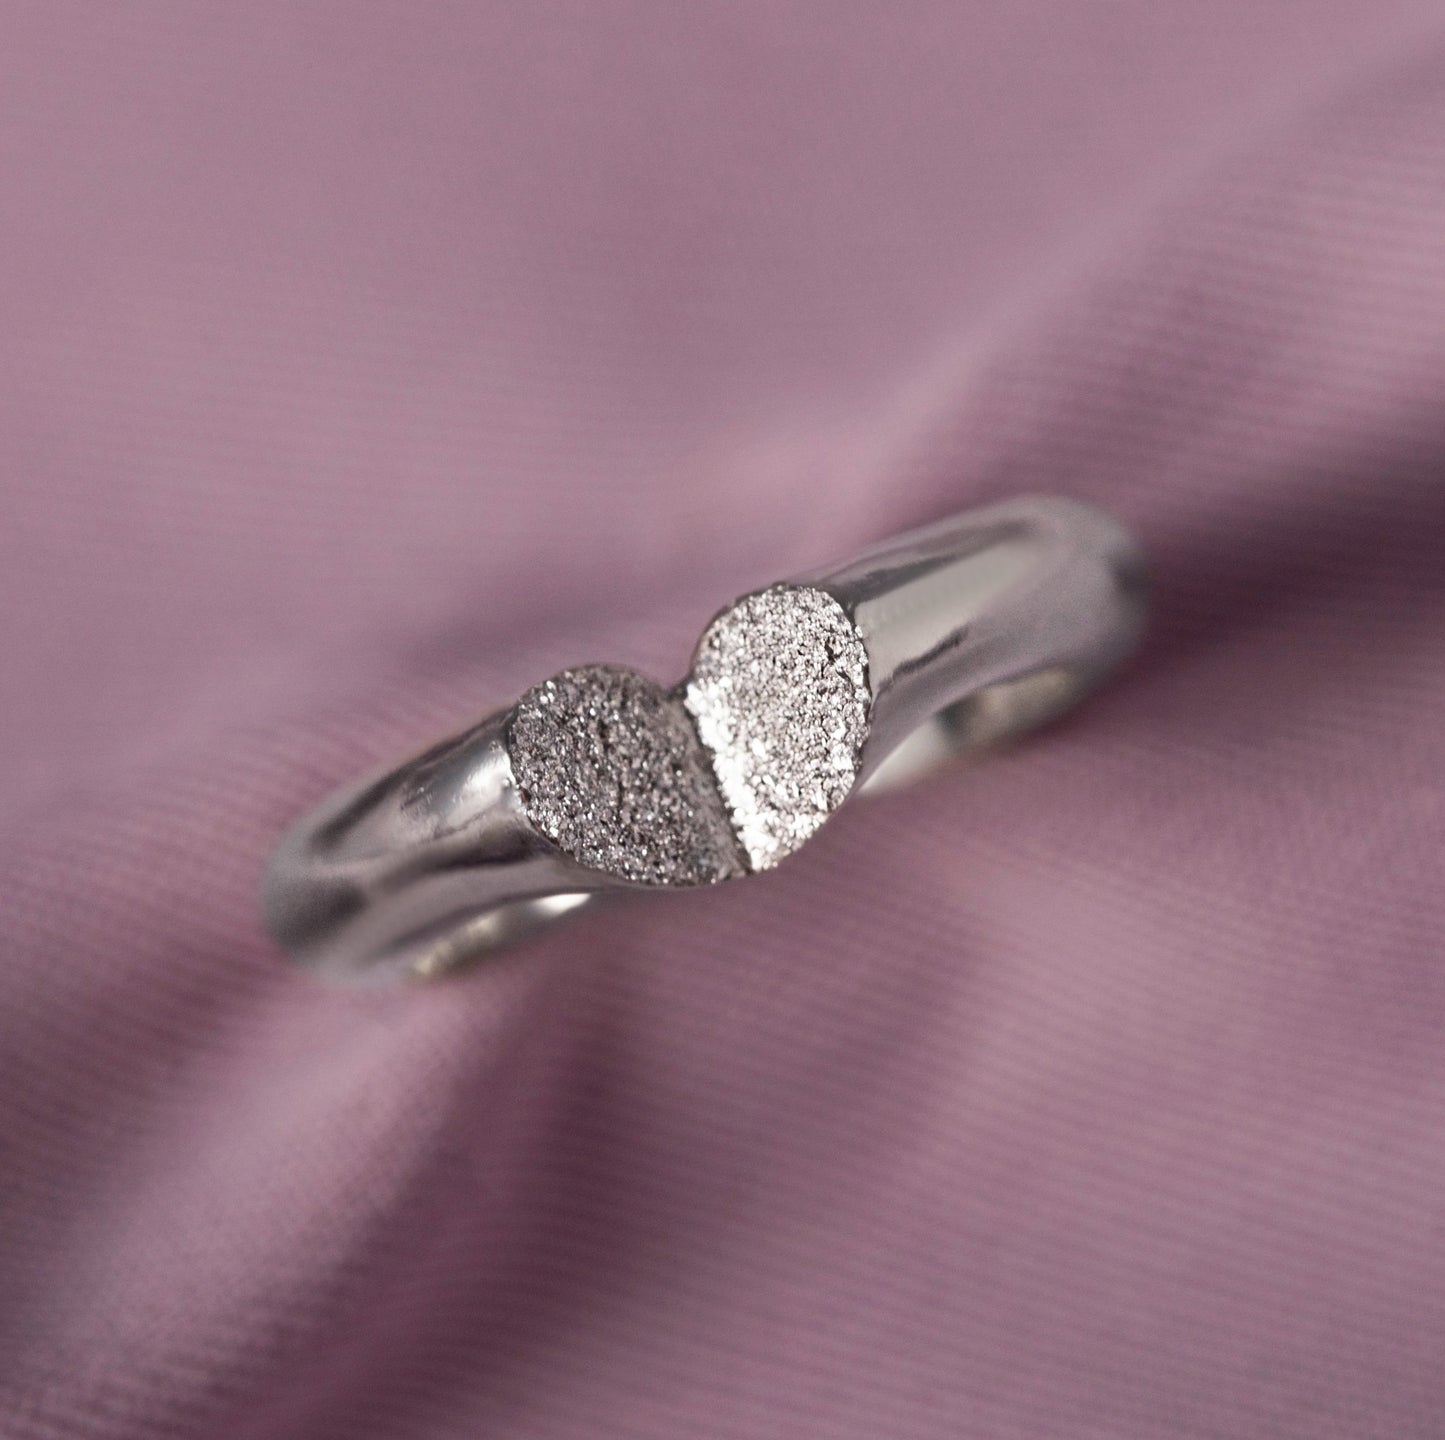 Virginia diamond ring (PC)